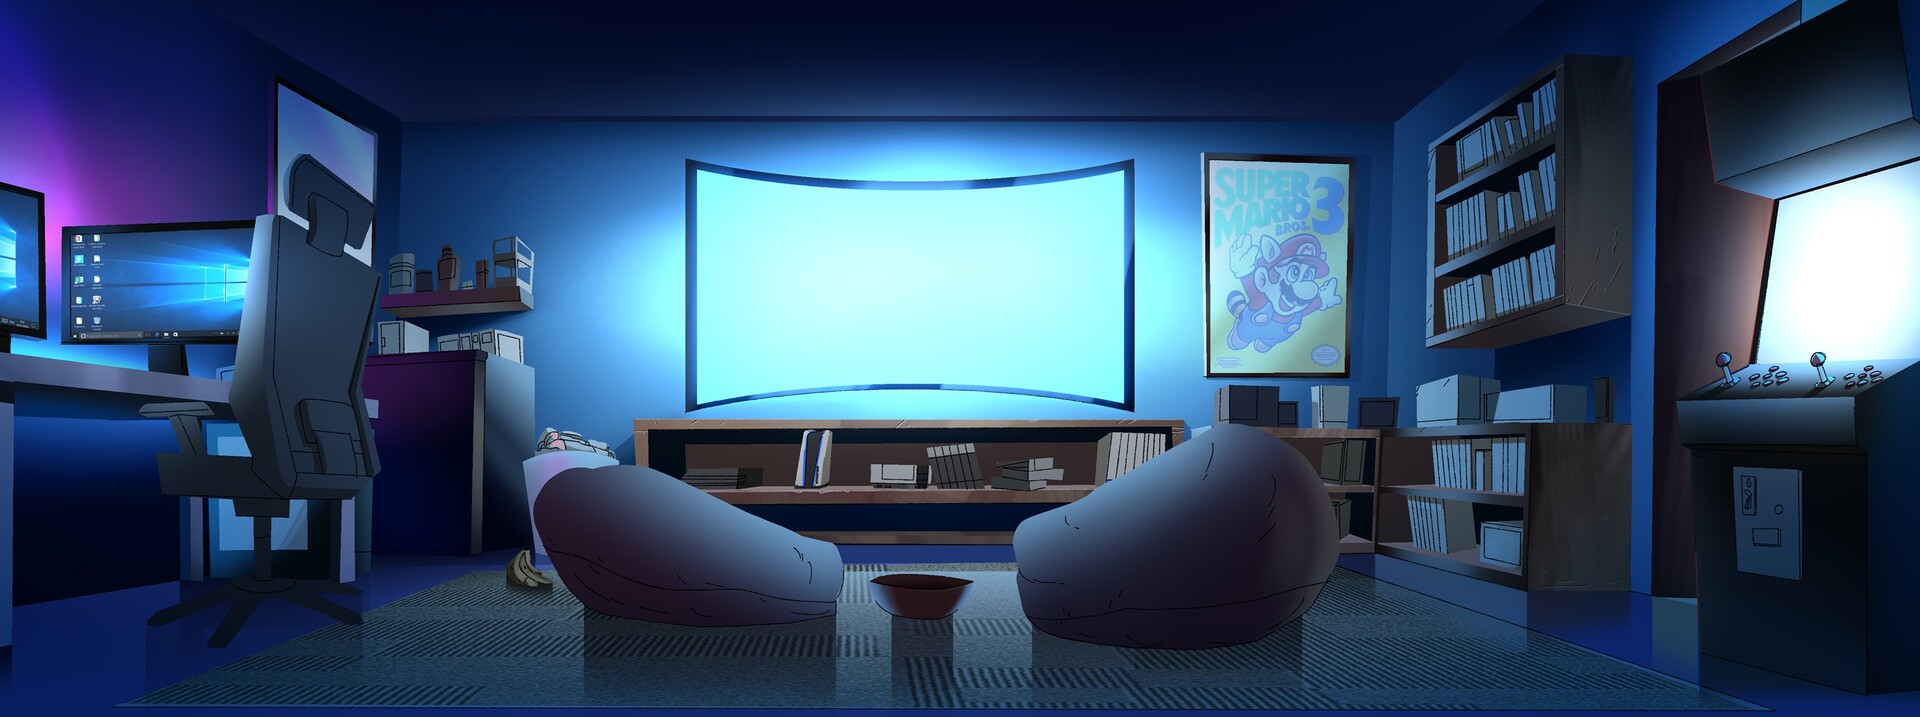 Tổng hợp 999 Background gaming room Phù hợp cho trang trí các phòng chơi  game